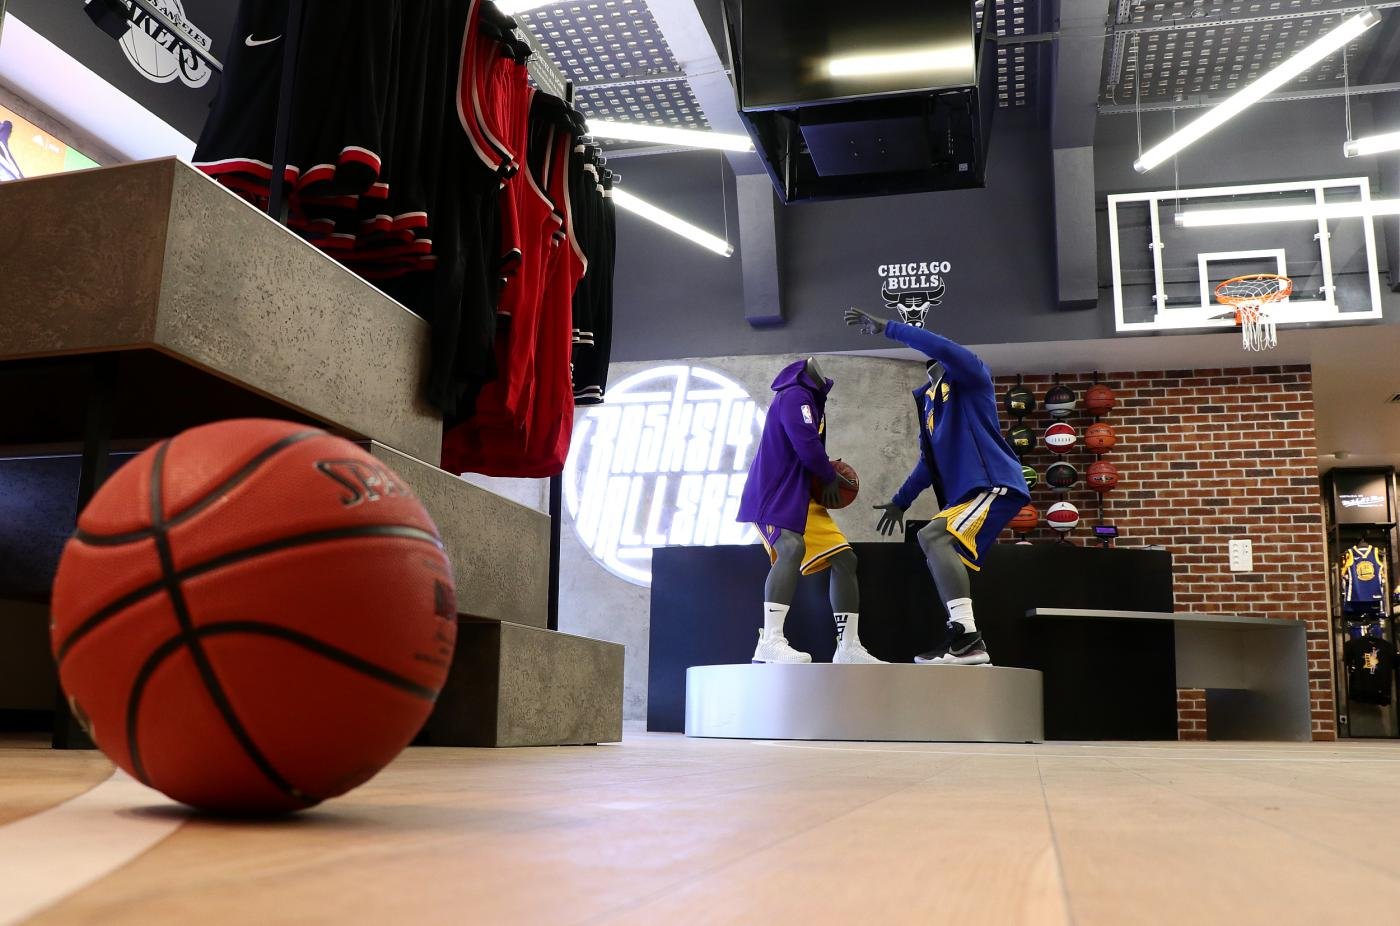 Basket4Ballers est de retour à Strasbourg avec une boutique dédiée au basketball !